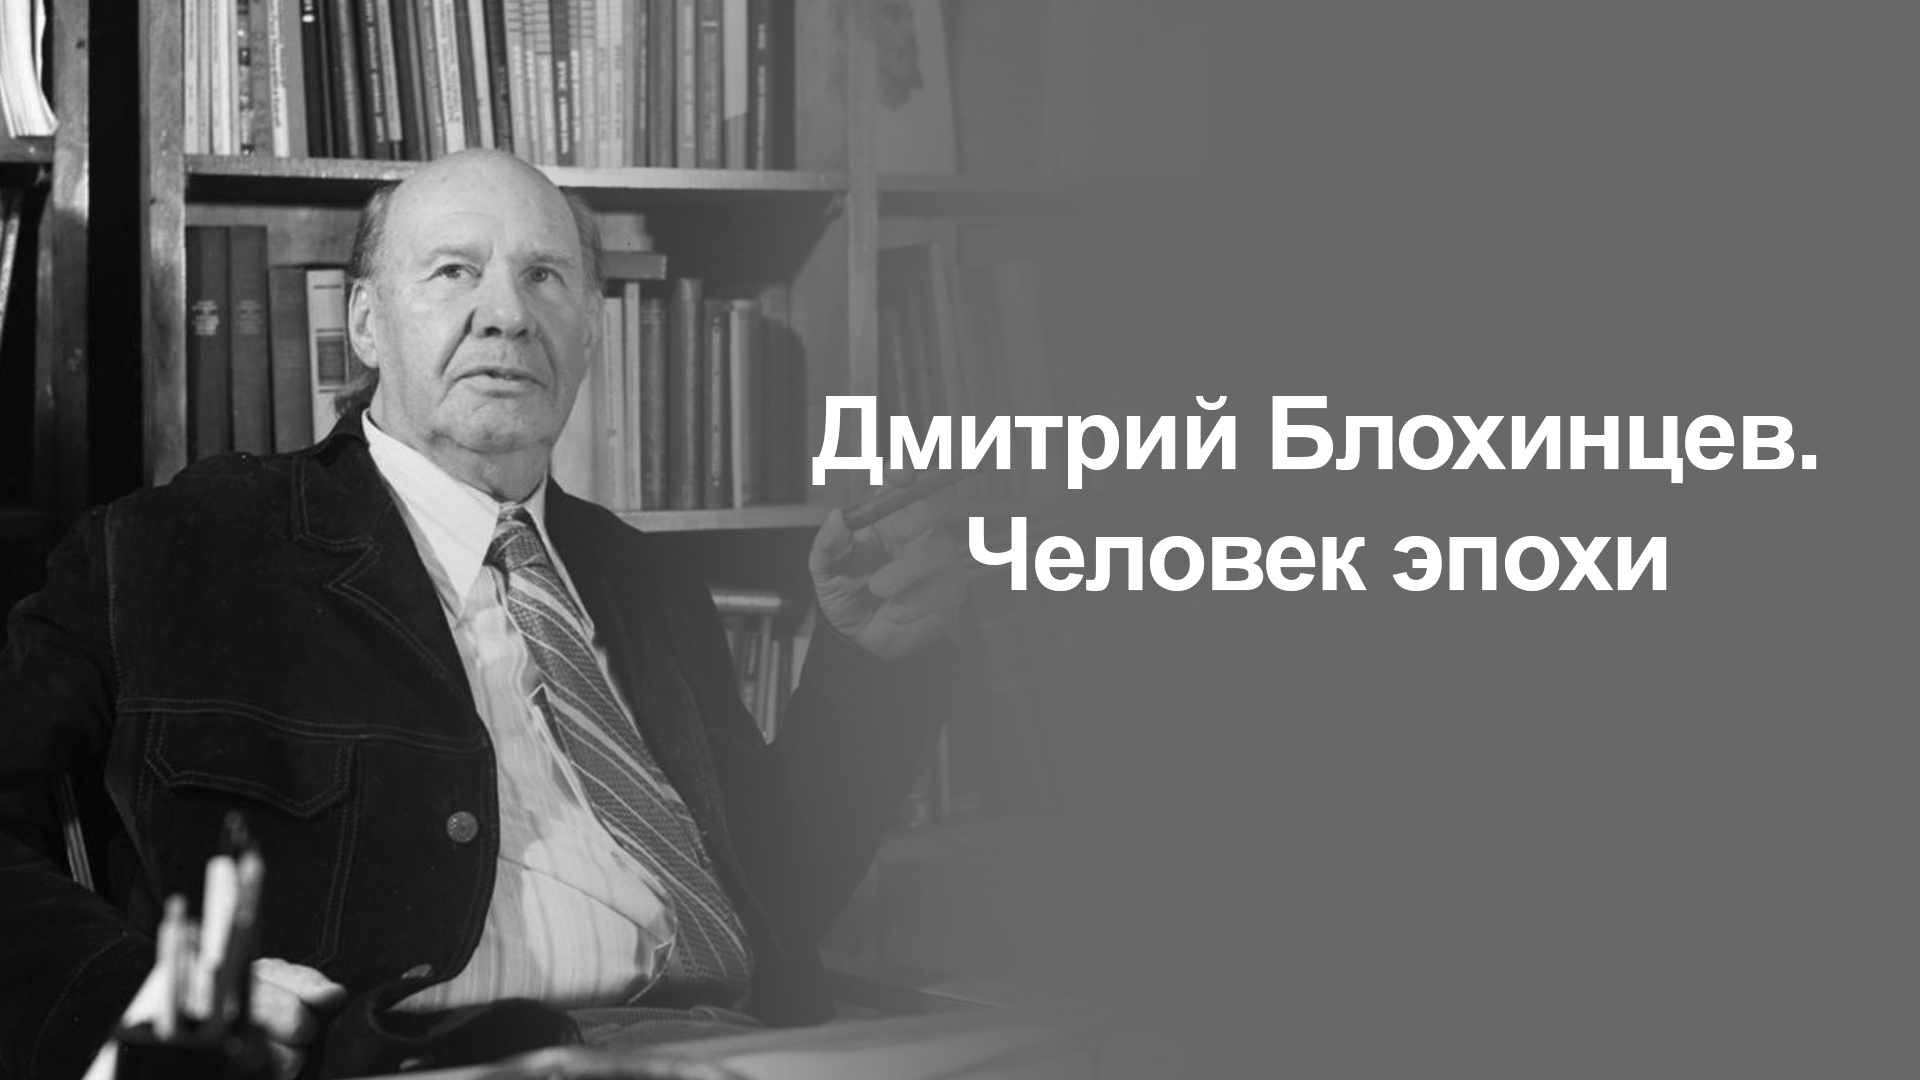 Дмитрий Блохинцев. Человек эпохи